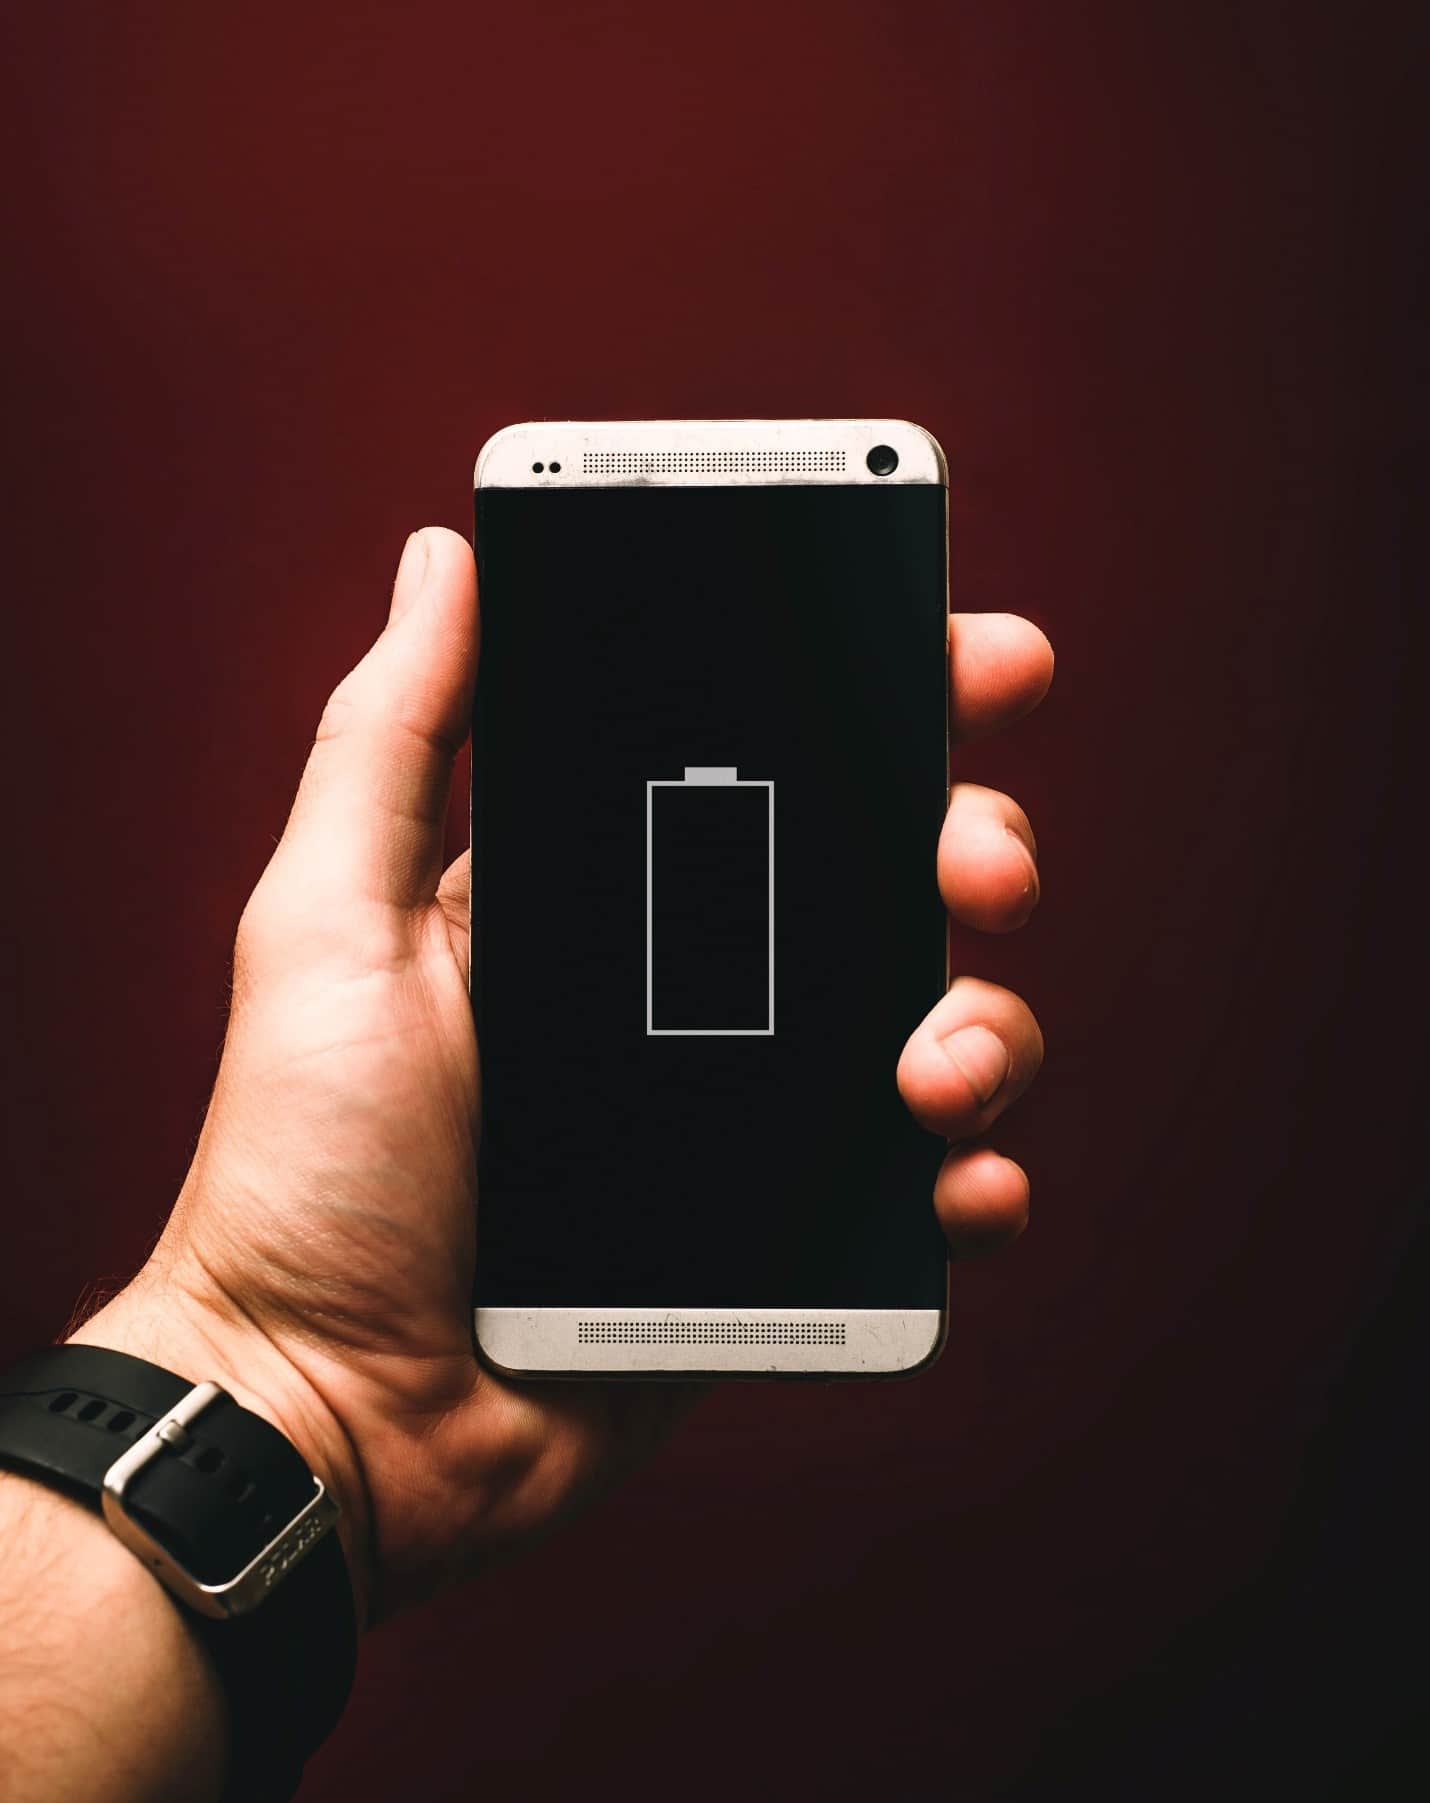 Overeenkomend Voornaamwoord Voorwaarde Tips om de batterij van je smartphone te sparen